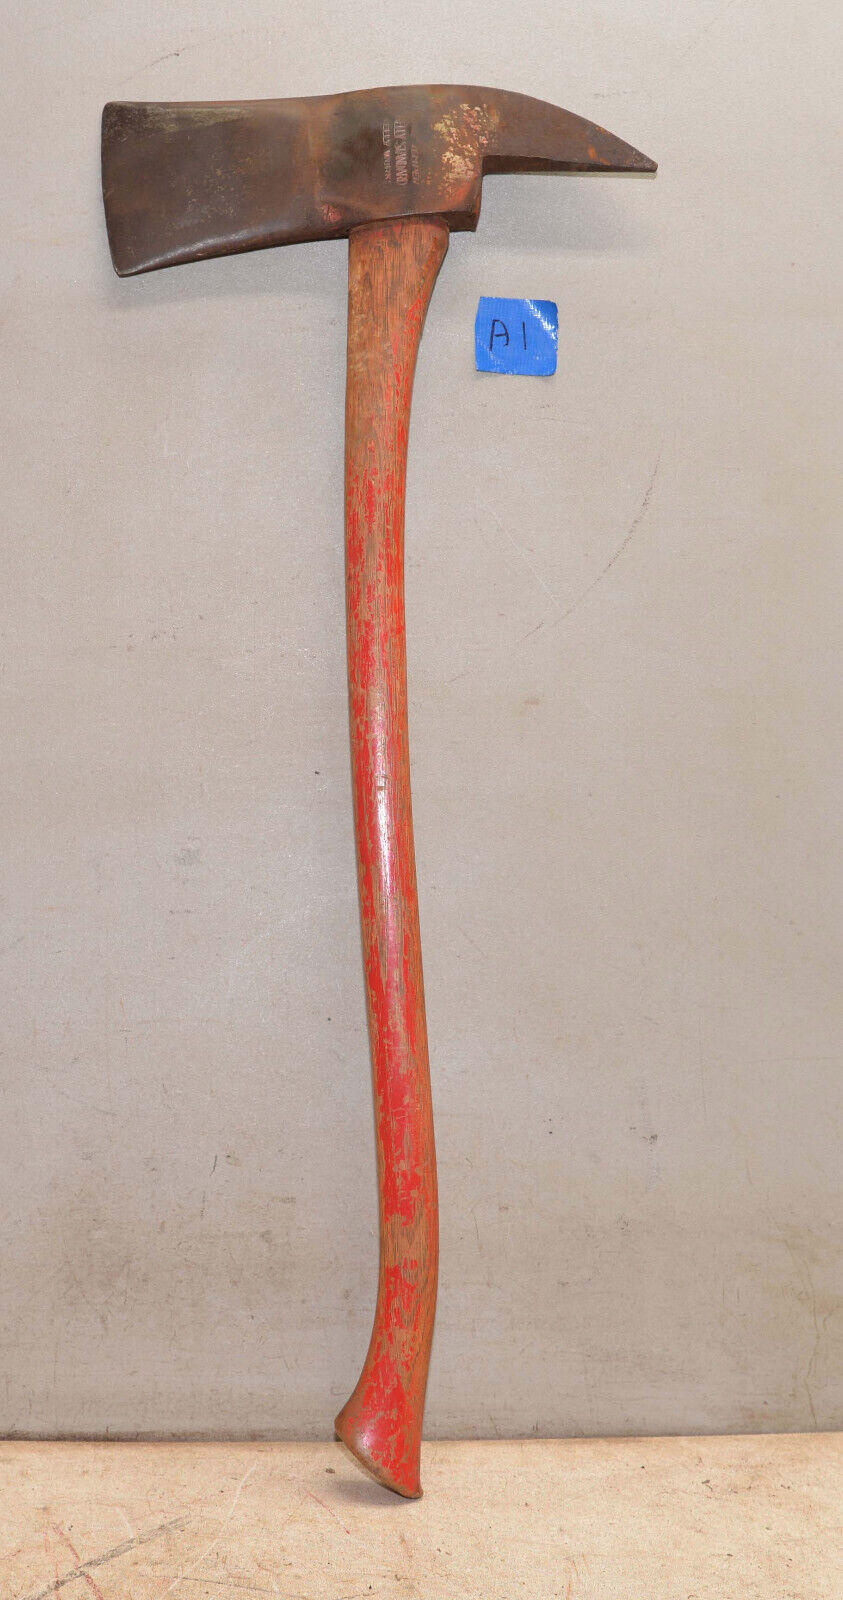 Huge rare 7 lb head Kelly Standard fire axe collectible fireman antique tool A1